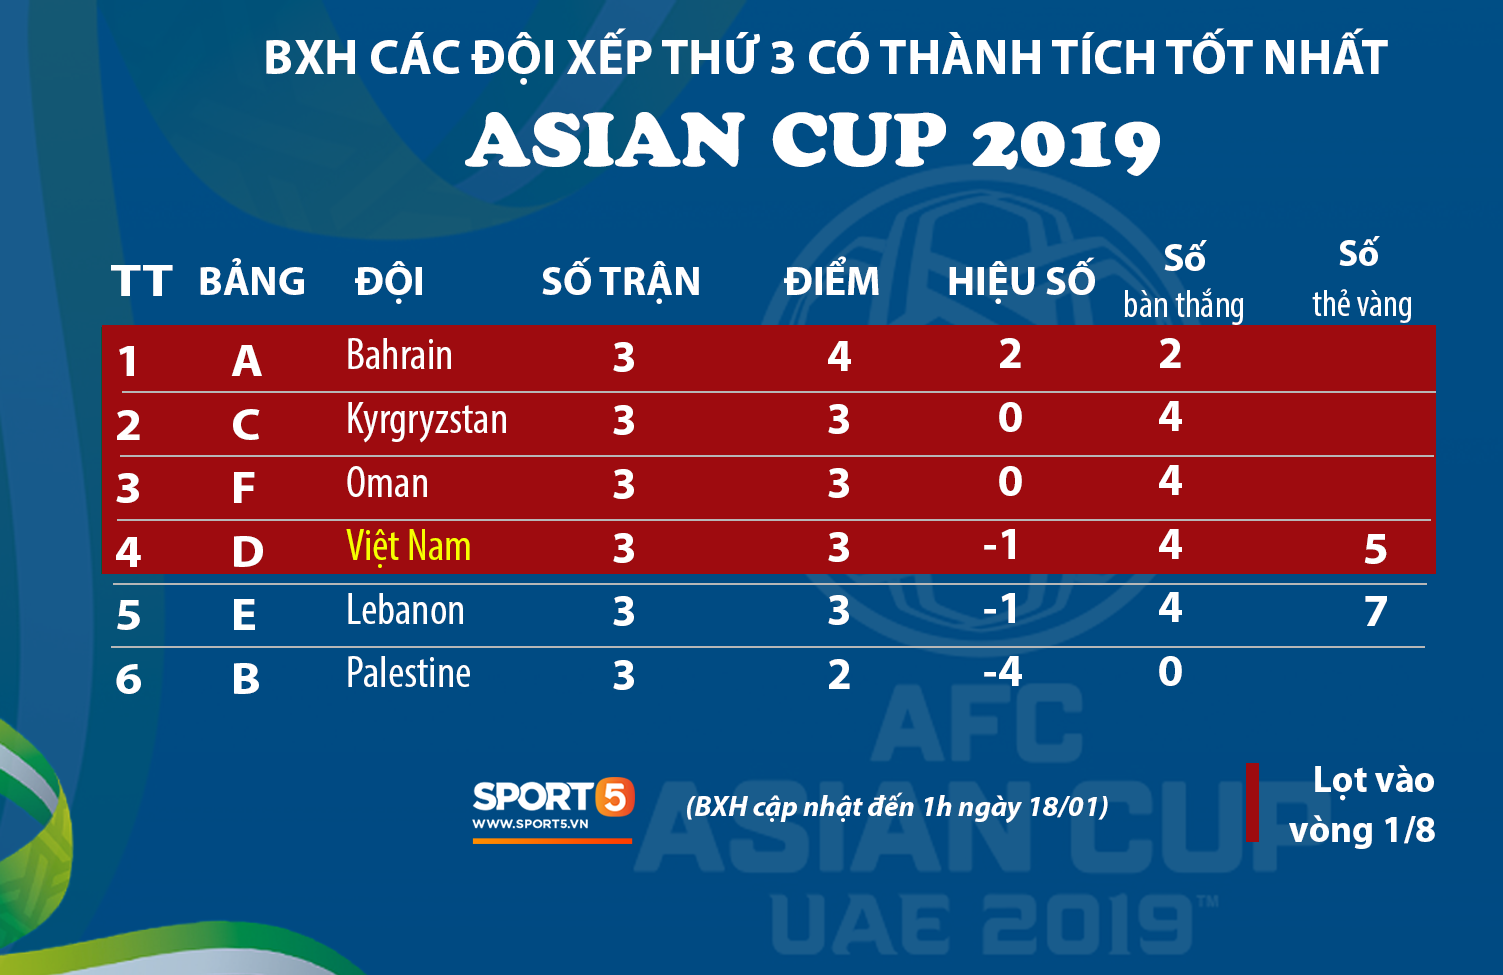 Nhờ chỉ số fair-play, Việt Nam chính thức giành vé vào vòng 1/8 Asian Cup 2019 - Ảnh 1.